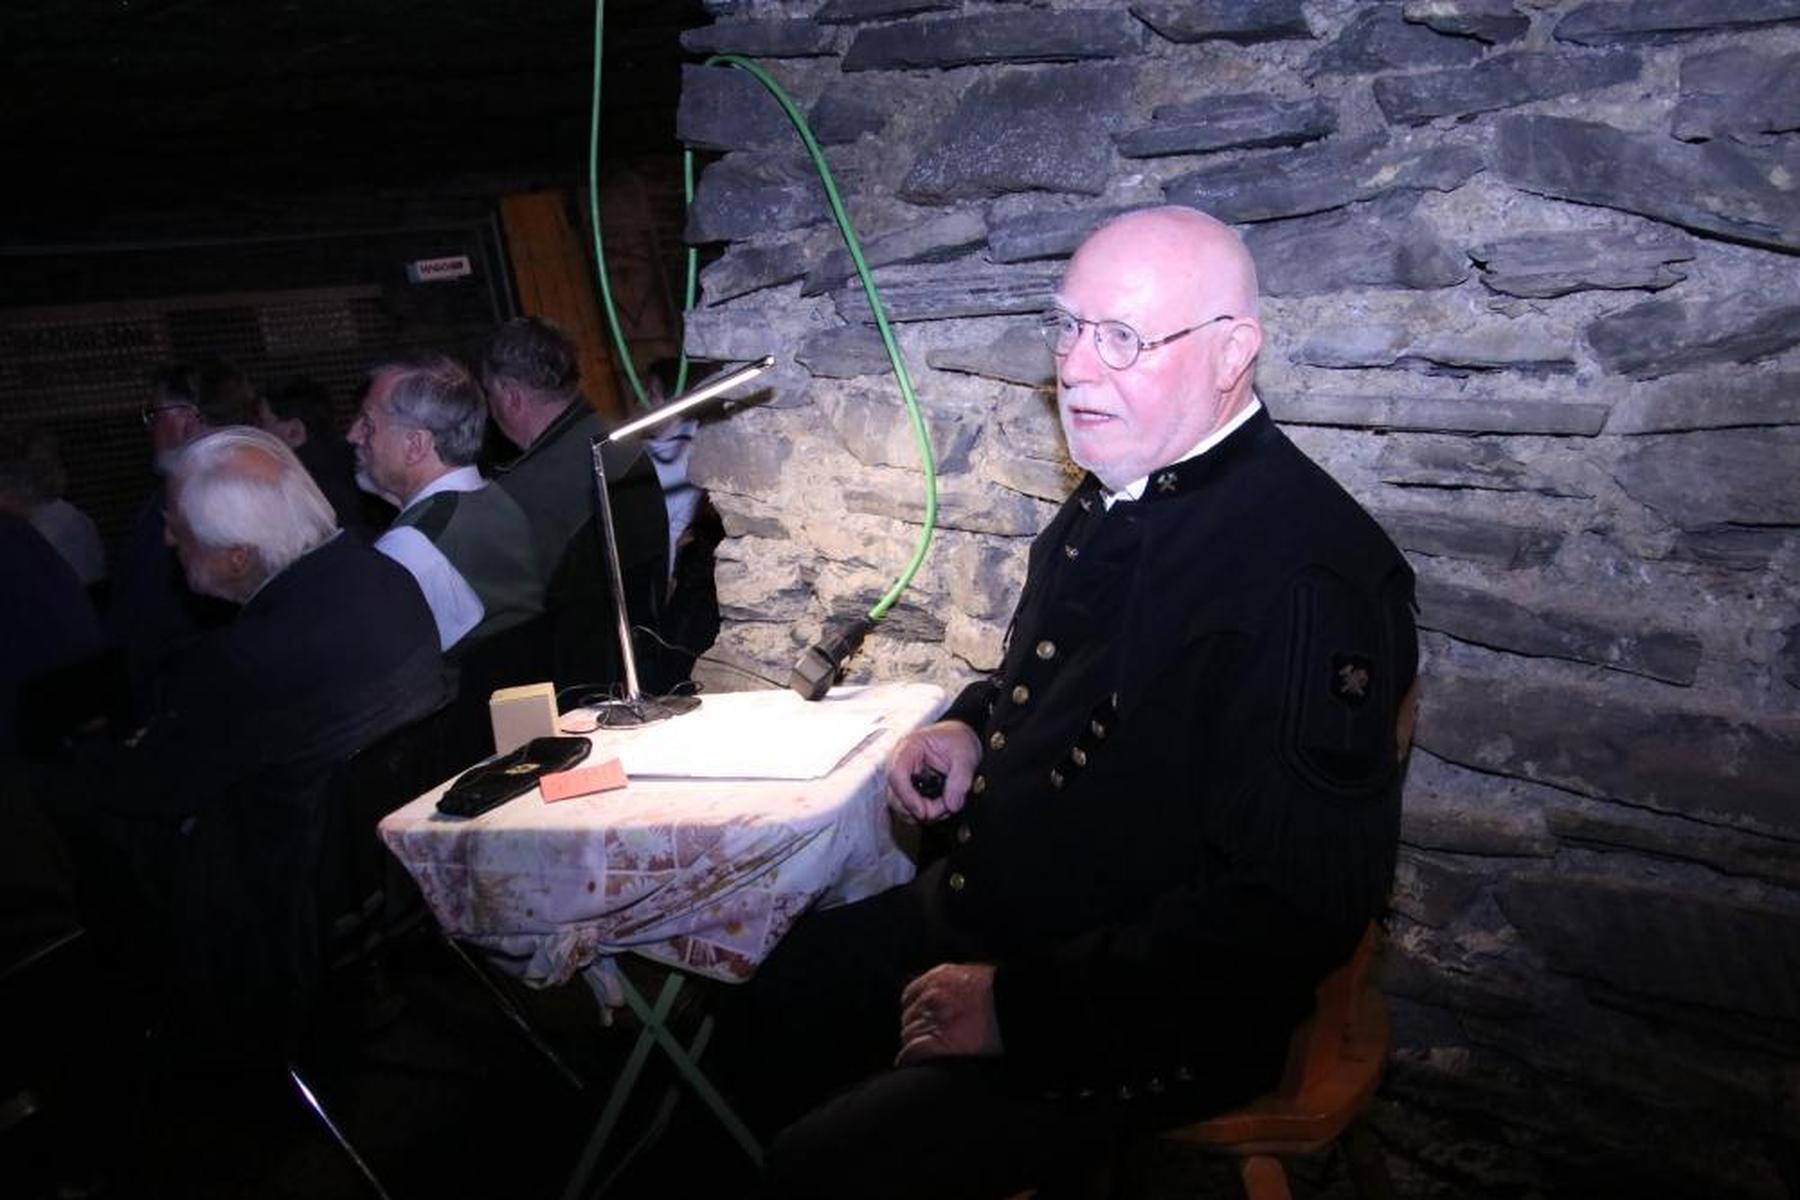 Kainach: Forscher Hans Eck hielt einen Vortrag in der Sunfixl-Höhle